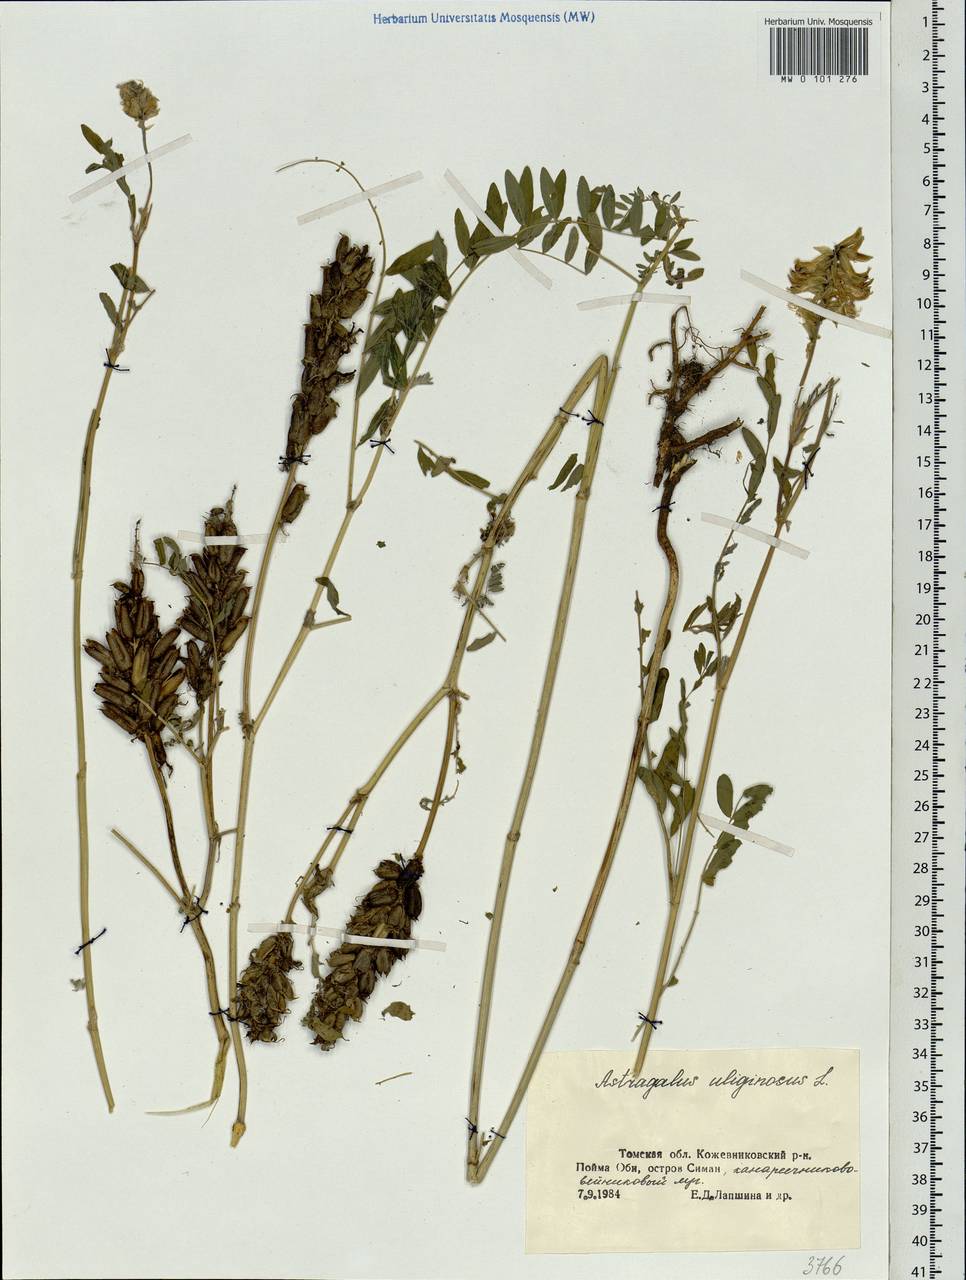 Astragalus uliginosus L., Siberia, Western Siberia (S1) (Russia)